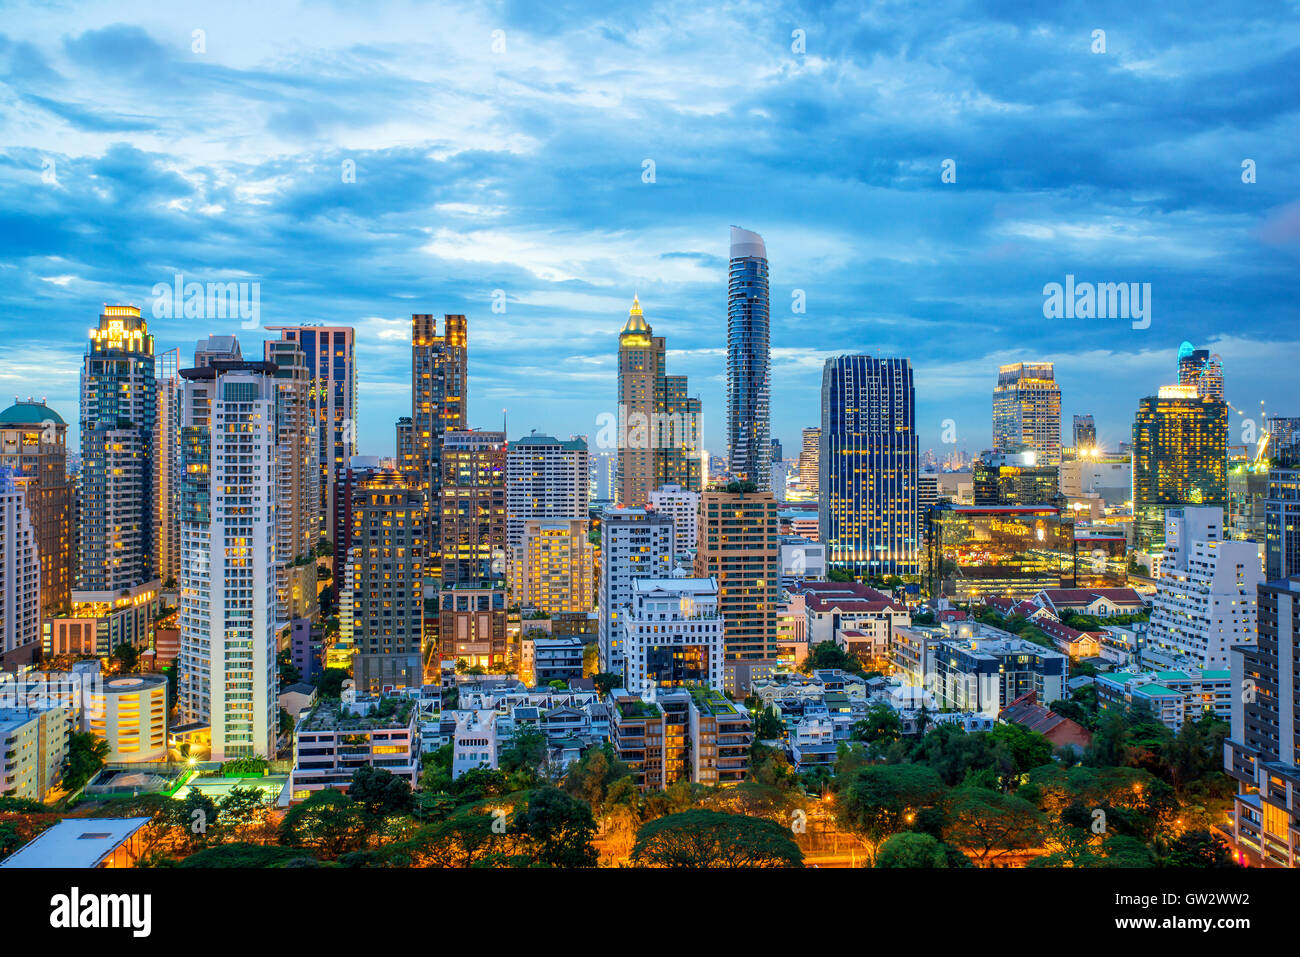 Gratte-ciel de la ville de Bangkok et Bangkok skyline at night in Bangkok, Thaïlande Banque D'Images